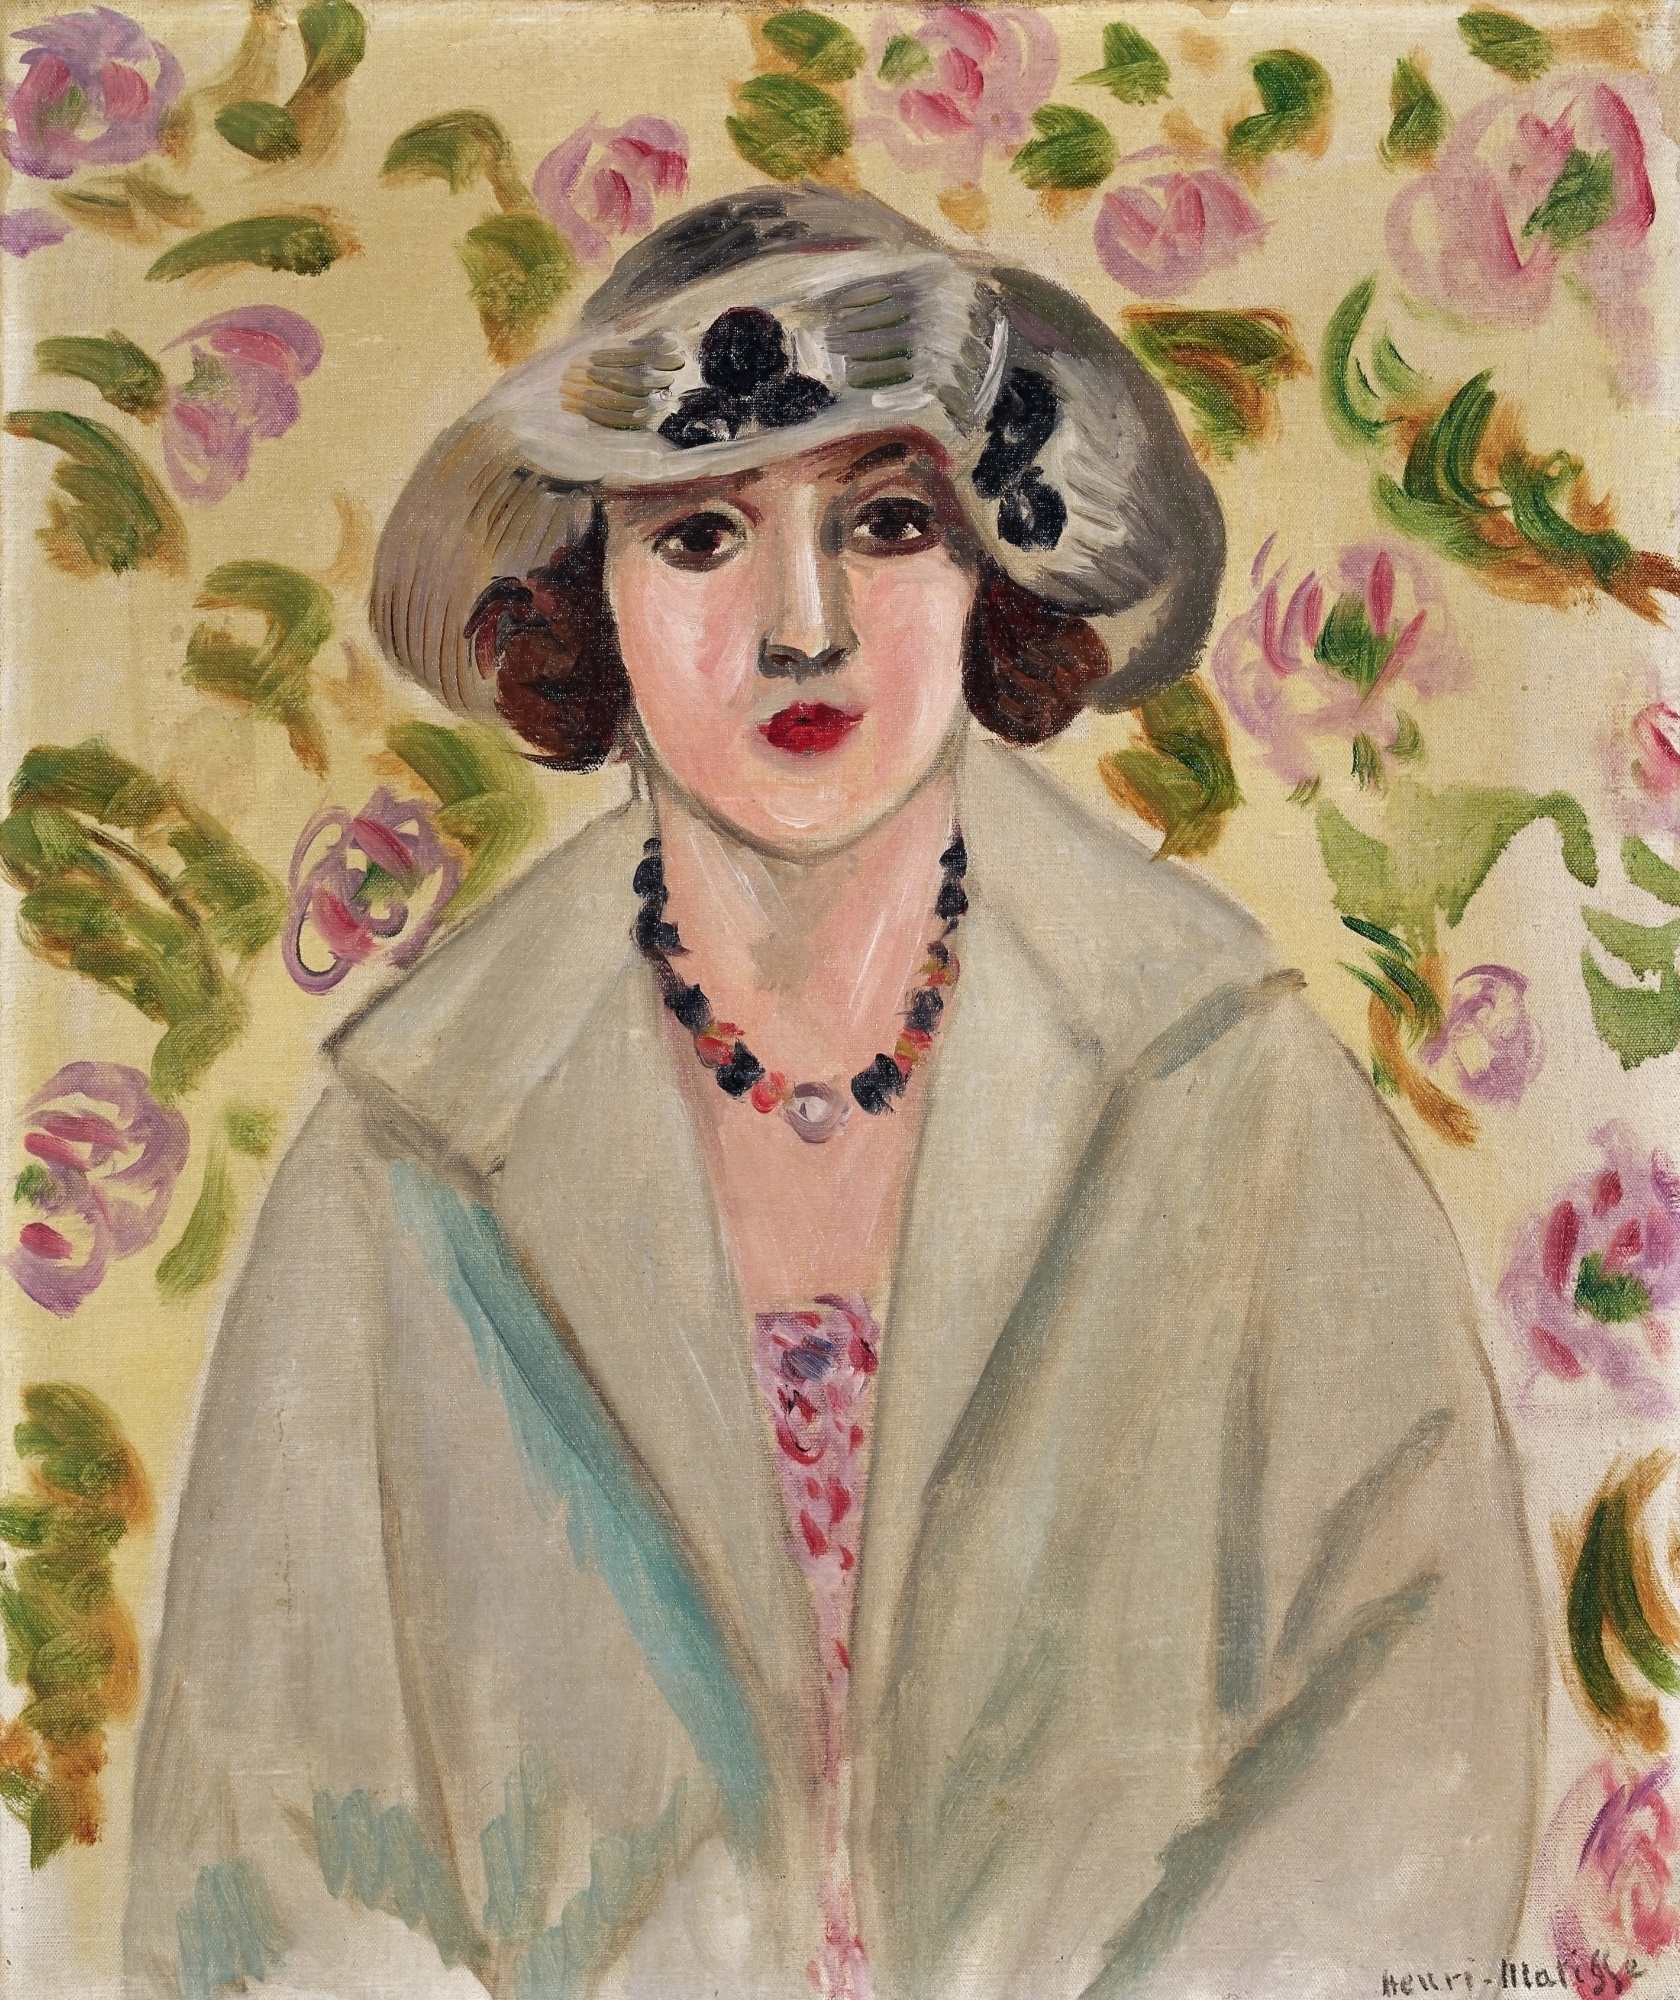 Jeune fille au chapeau de crin blanc by Henri Matisse, 1923